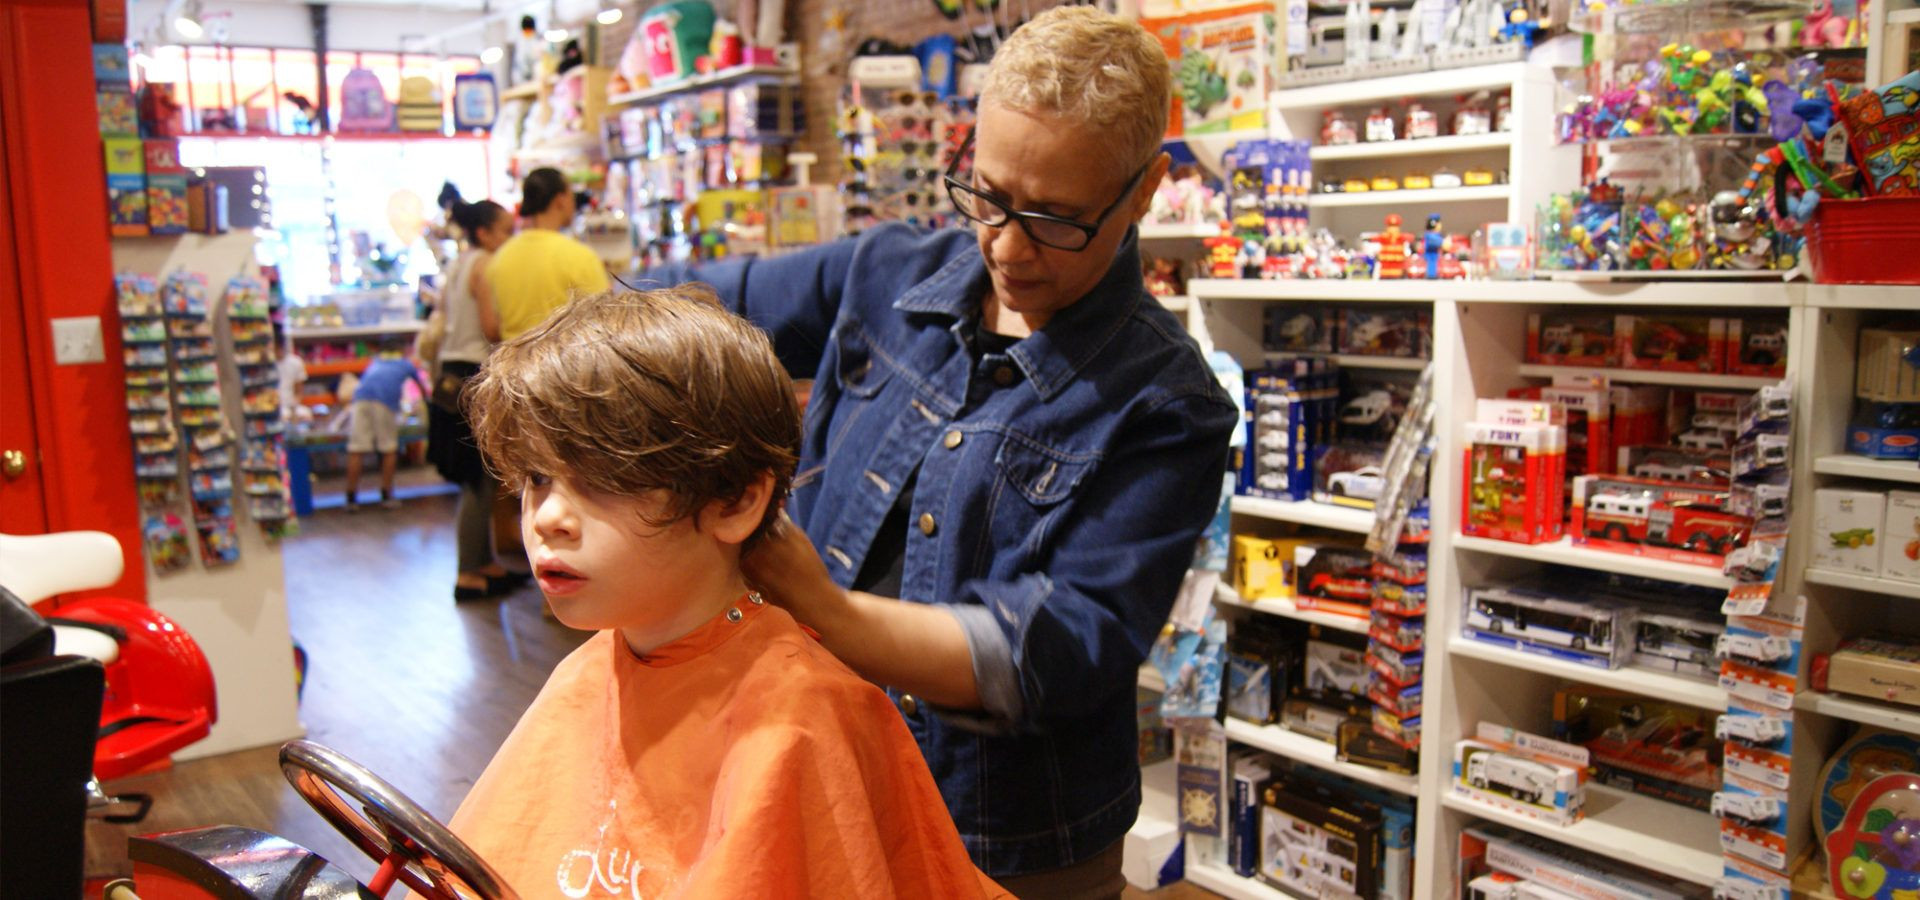 Kids Hair Salon Nyc
 Pin on Kids